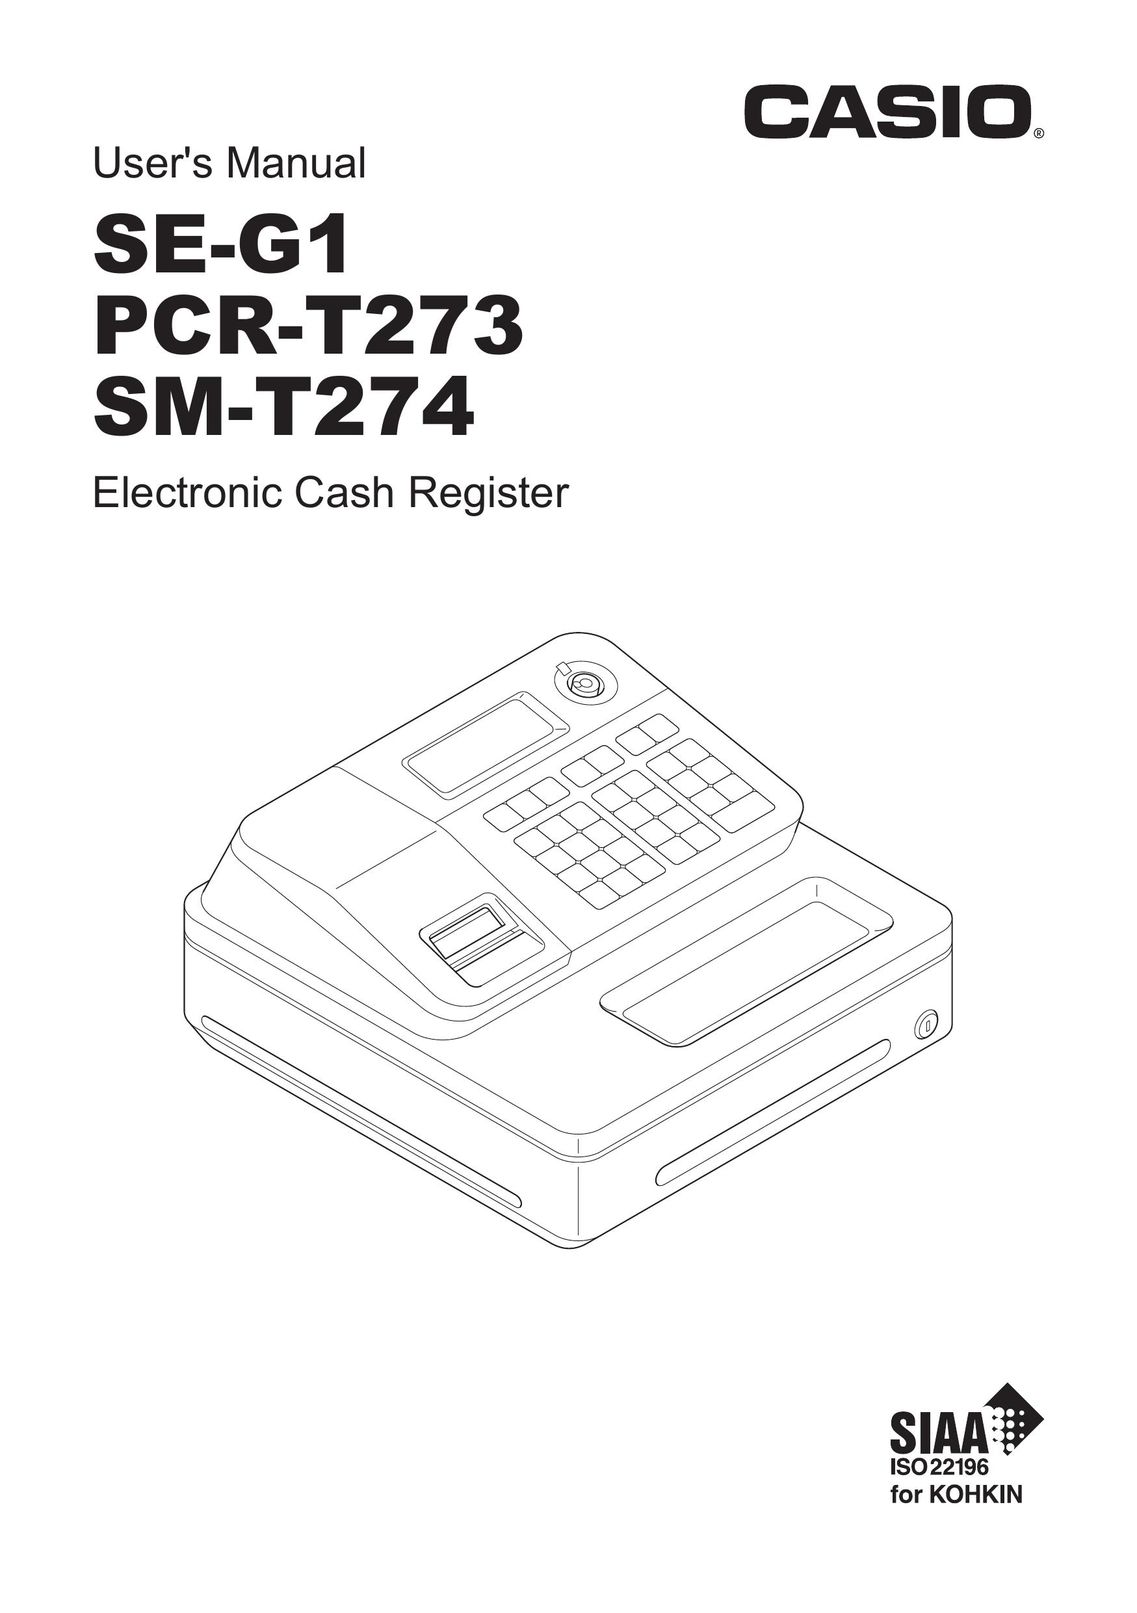 Casio PCR-T273 Cash Register User Manual